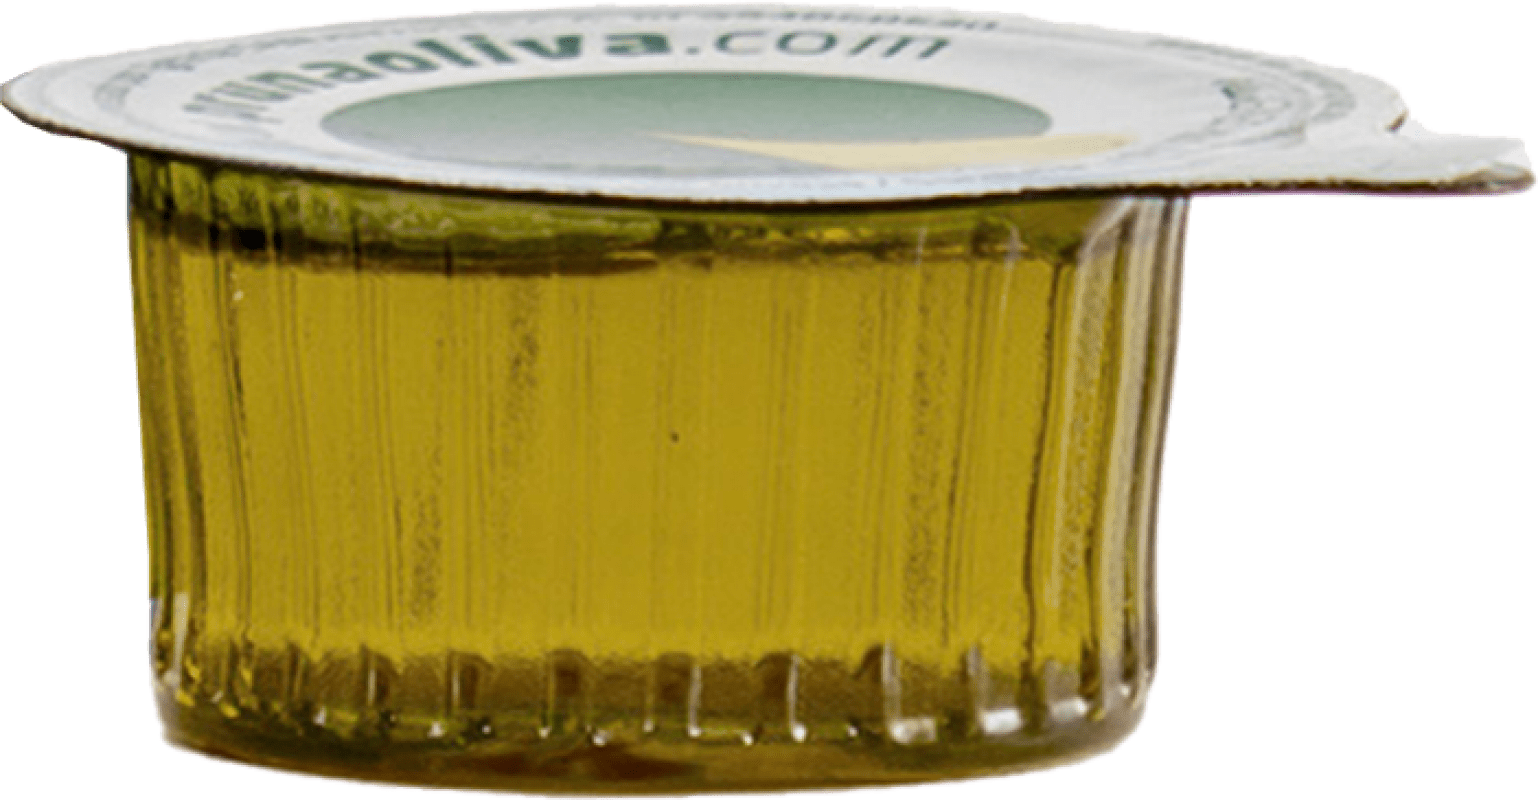 14,95 € Kostenloser Versand | 120 Einheiten Box Olivenöl Sacesa Virgen Monodosis 10 ml La Rioja Spanien